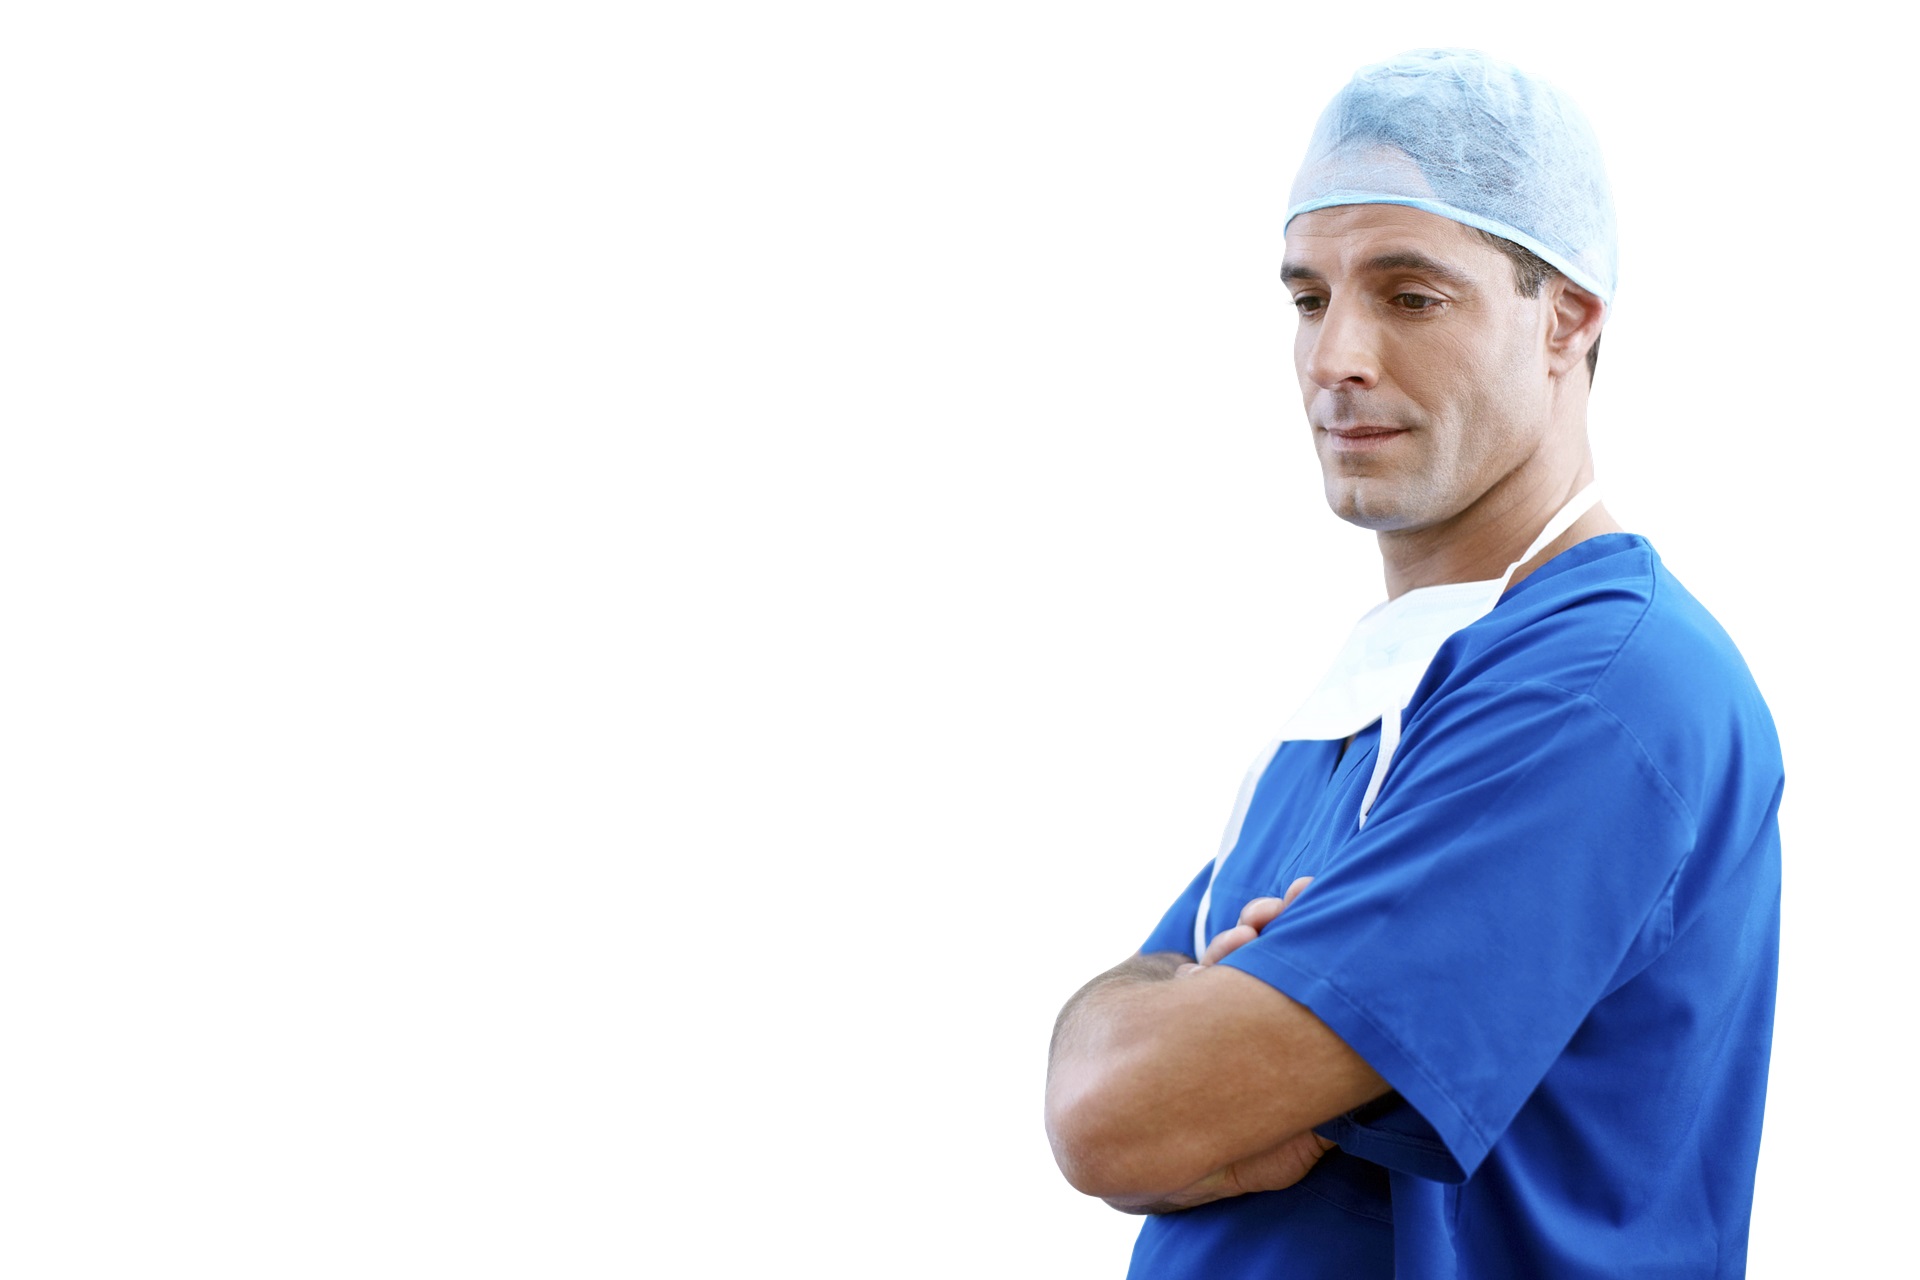 A photo of a male clinician in scrubs